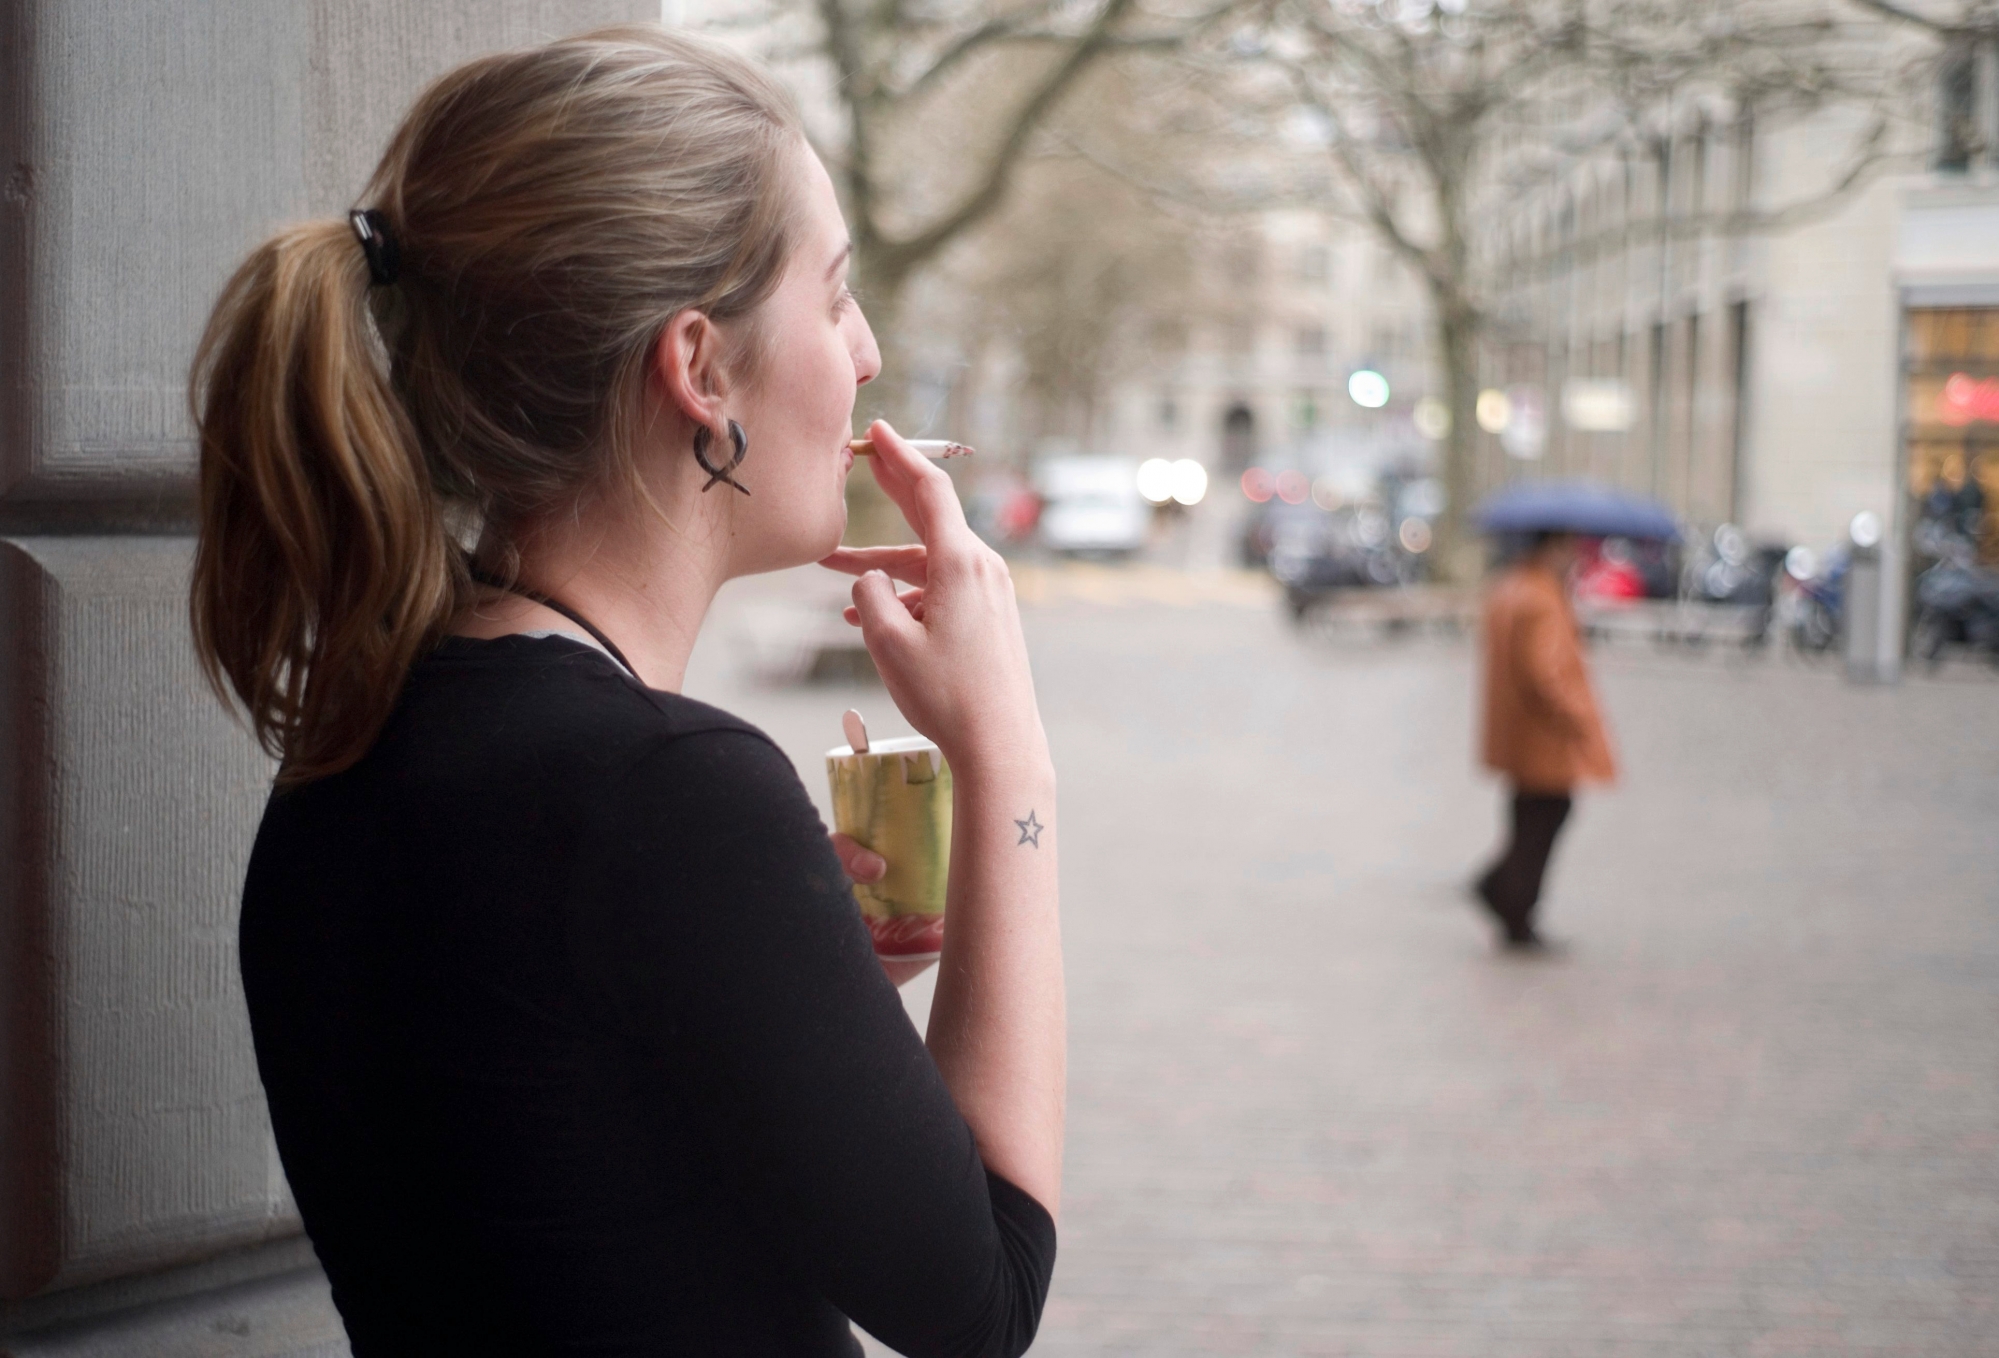 A young woman has a coffee and smokes a cigarette in front of a building in the city center of Zurich, Switzerland, pictured on April 15, 2008. (KEYSTONE/Gaetan Bally)

Eine junge Frau raucht am 15. April 2008 vor einem Gebaeude in der Innenstadt von Zuerich, Schweiz, eine Zigarette und trinkt einen Kaffee. (KEYSTONE/Gaetan Bally)


 SCHWEIZ RAUCHEN